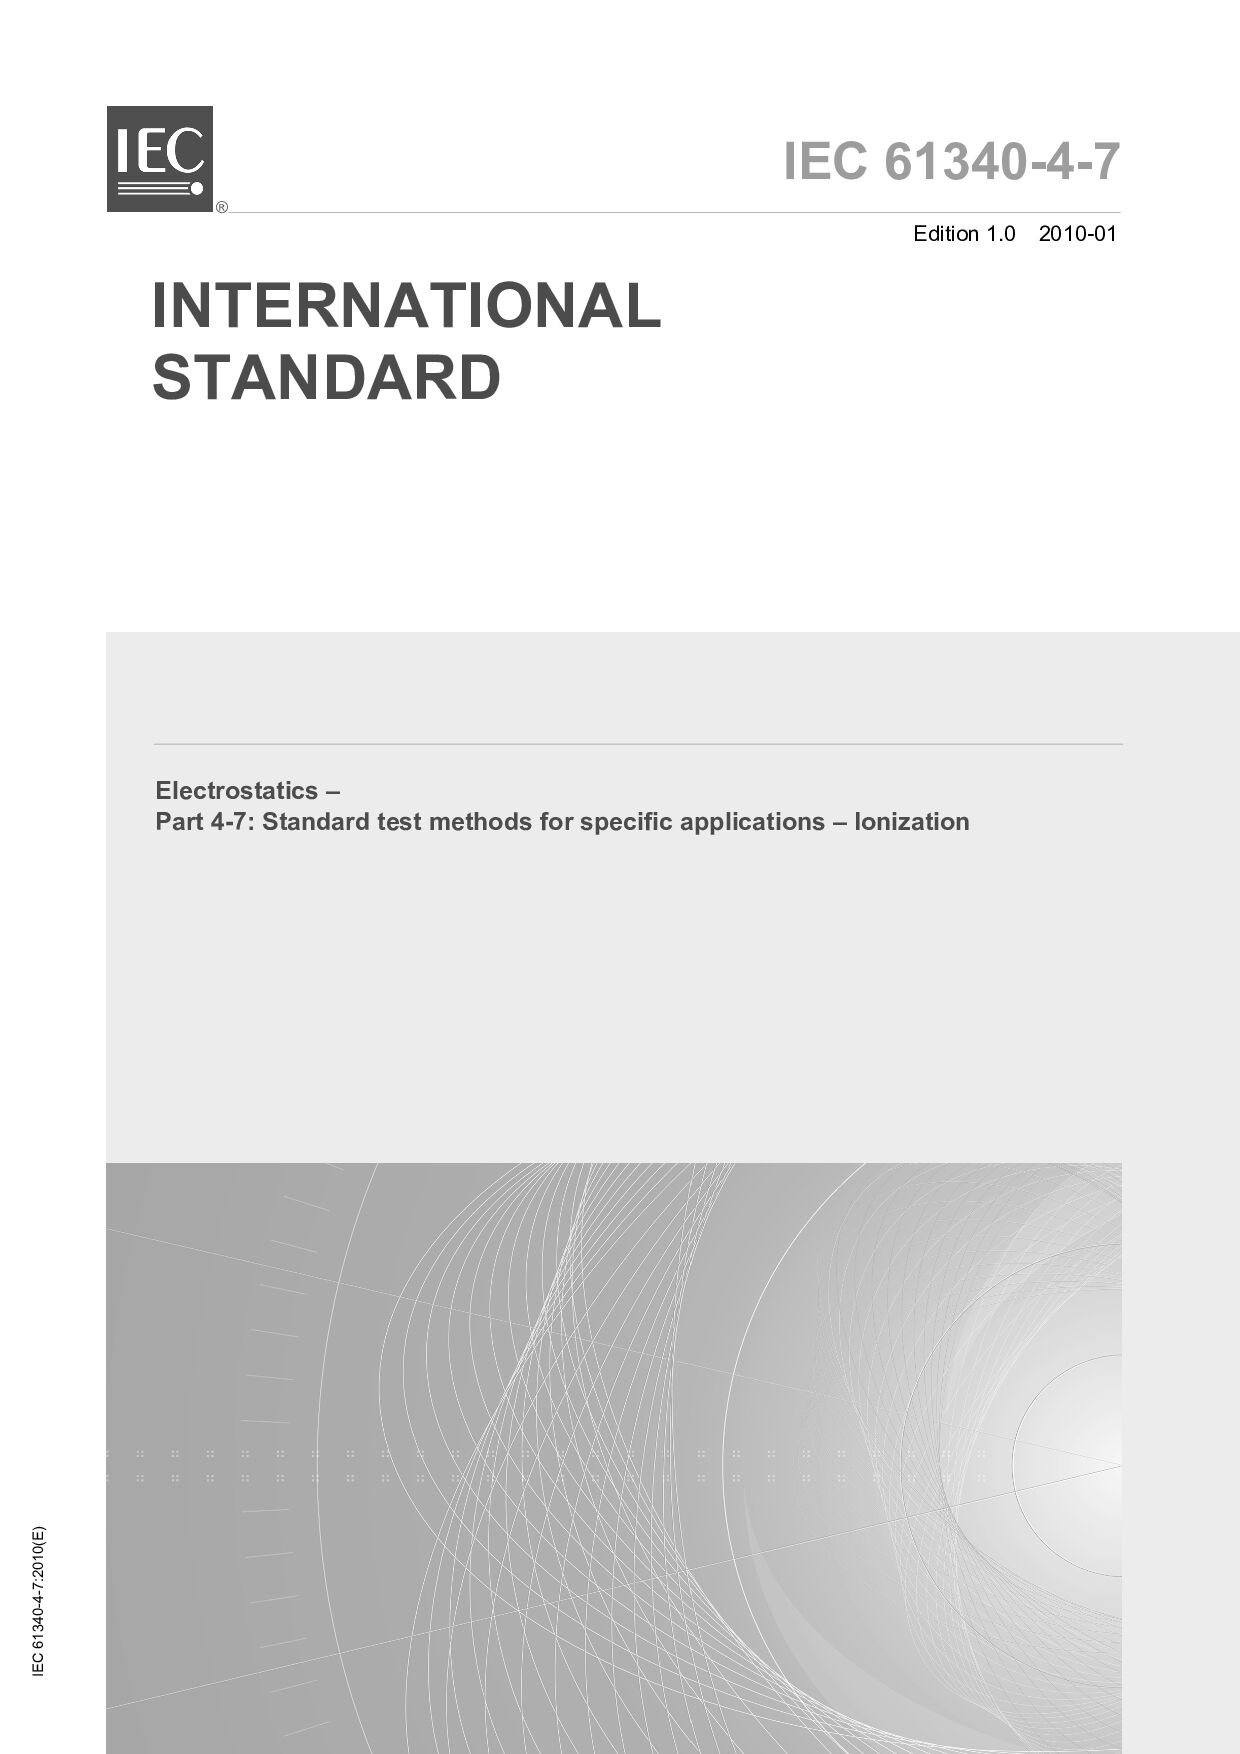 IEC 61340-4-7:2010